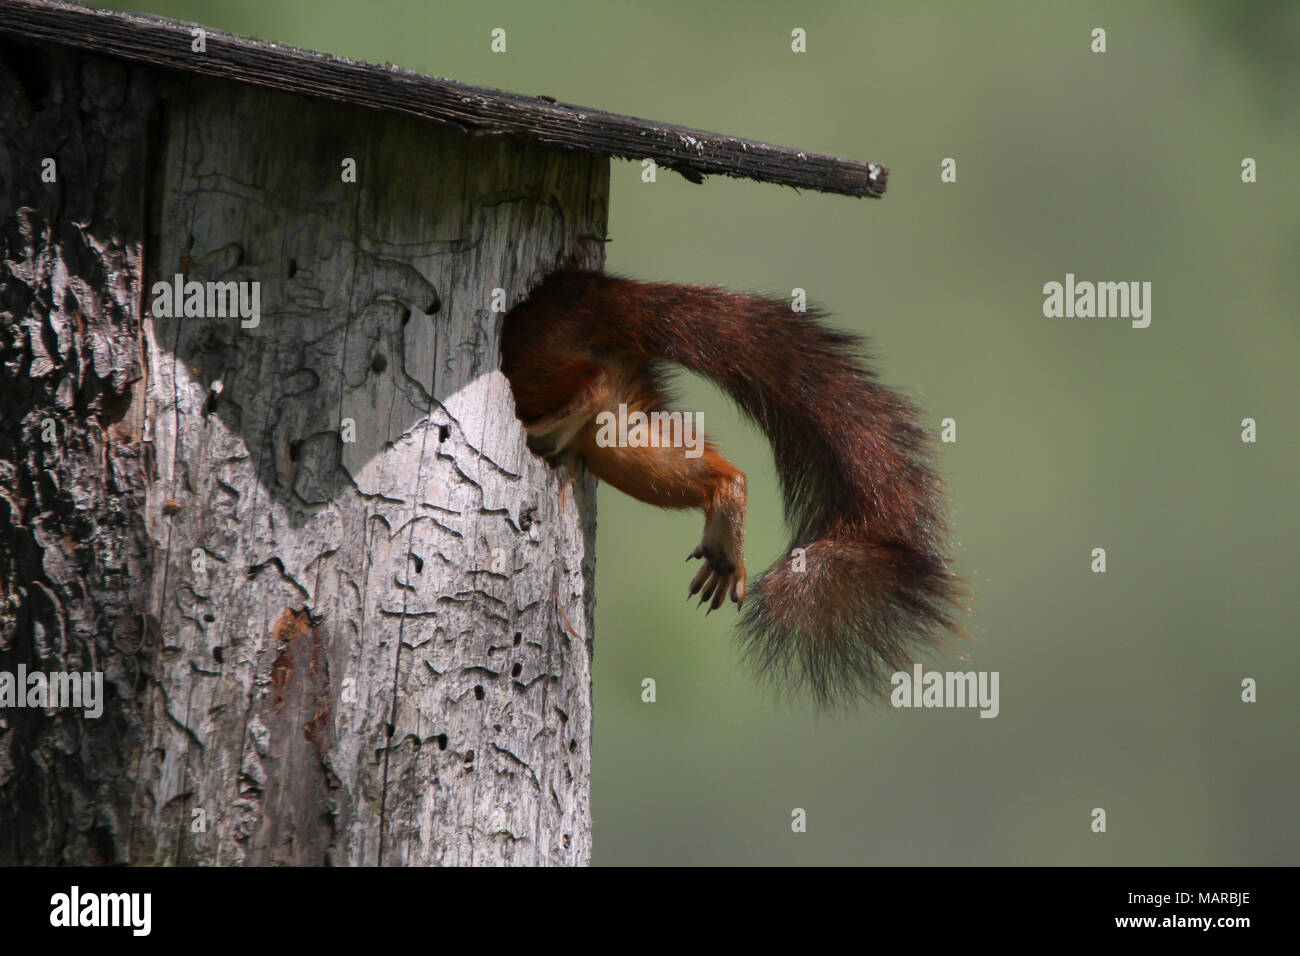 Red scoiattolo (Sciurus vulgaris). Madre arrampicata in scatola di nidificazione. Dalarna, Schweden Foto Stock